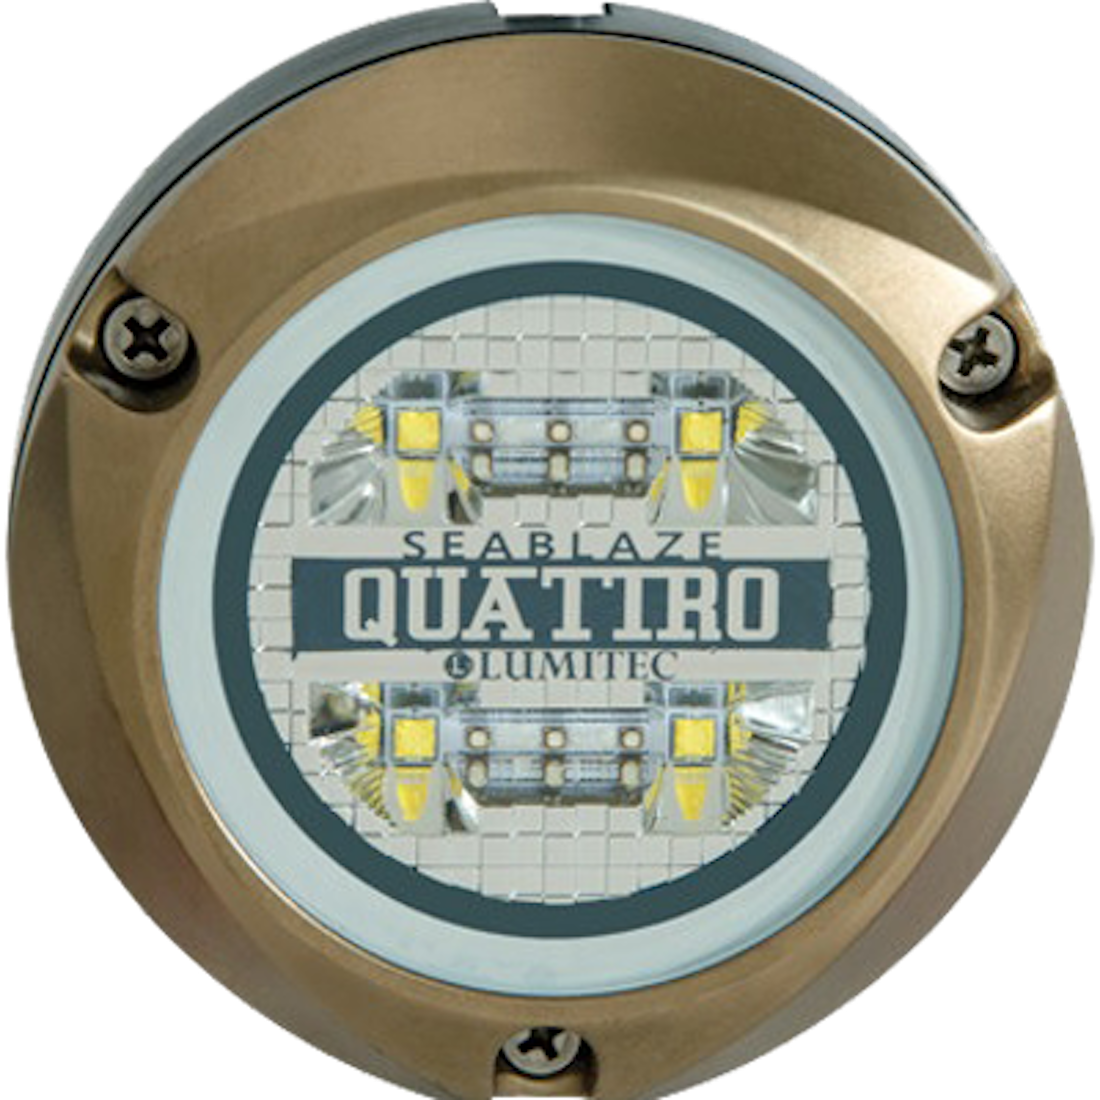 Lumitec SeaBlaze Quattro LED Underwater Light - Spectrum - RGBW [101510]